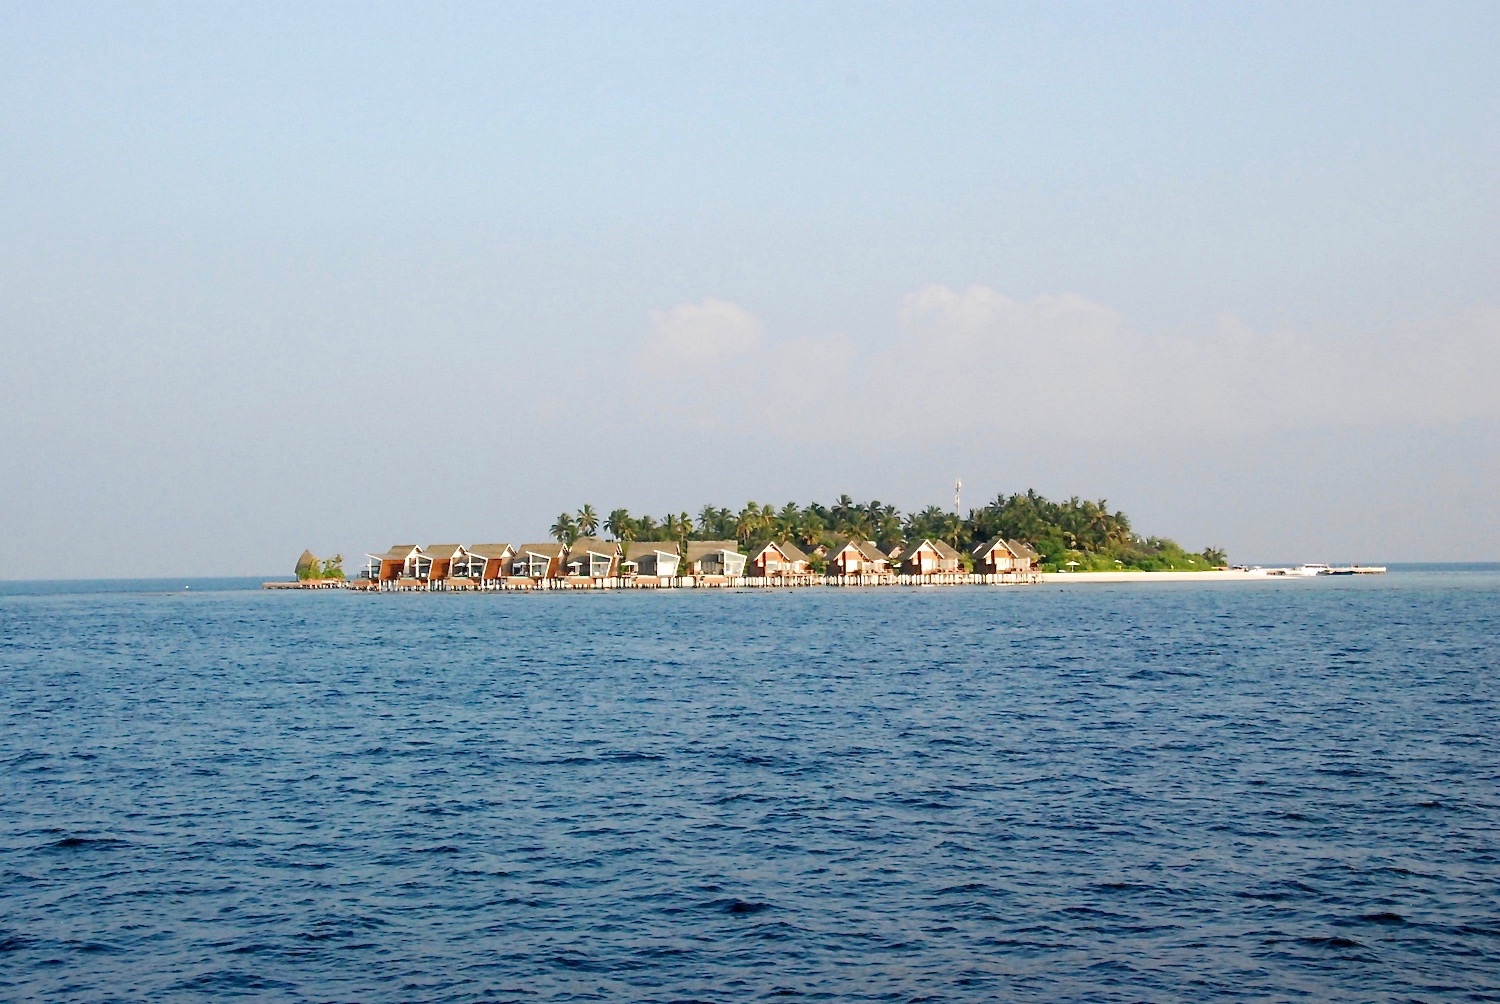 kandolhu island maldives